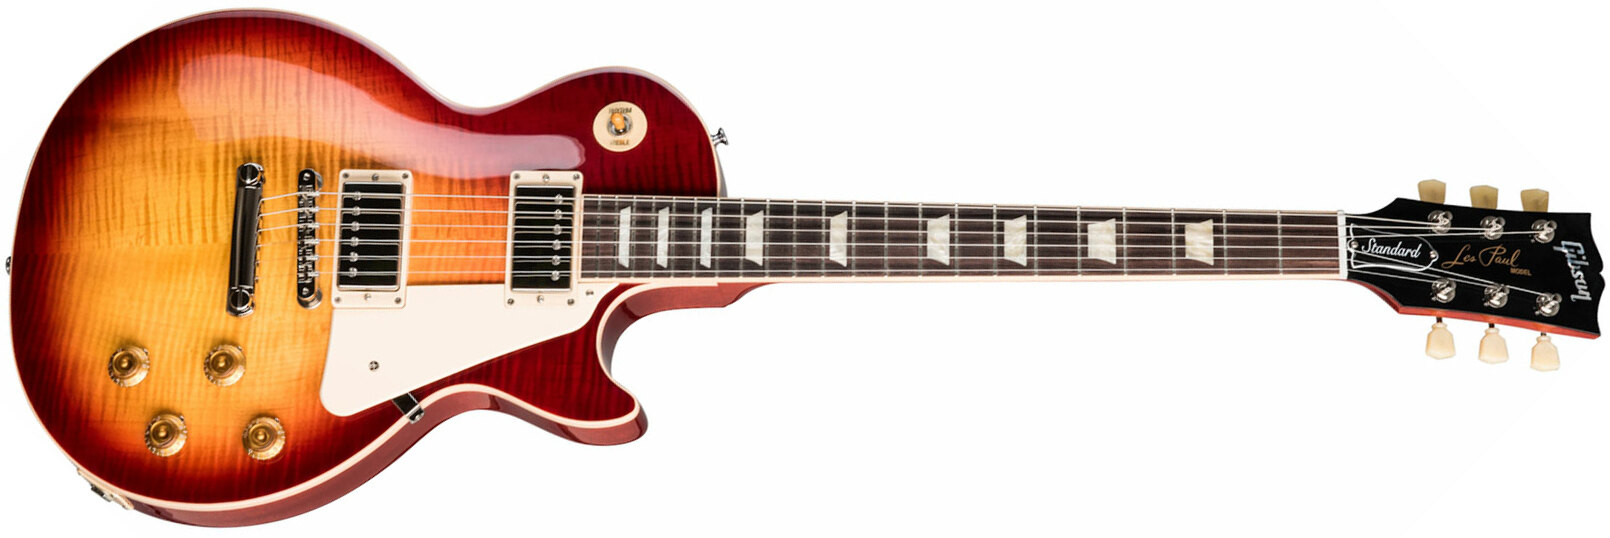 Gibson Les Paul Standard 50s 2h Ht Rw - Heritage Cherry Sunburst - Enkel gesneden elektrische gitaar - Main picture